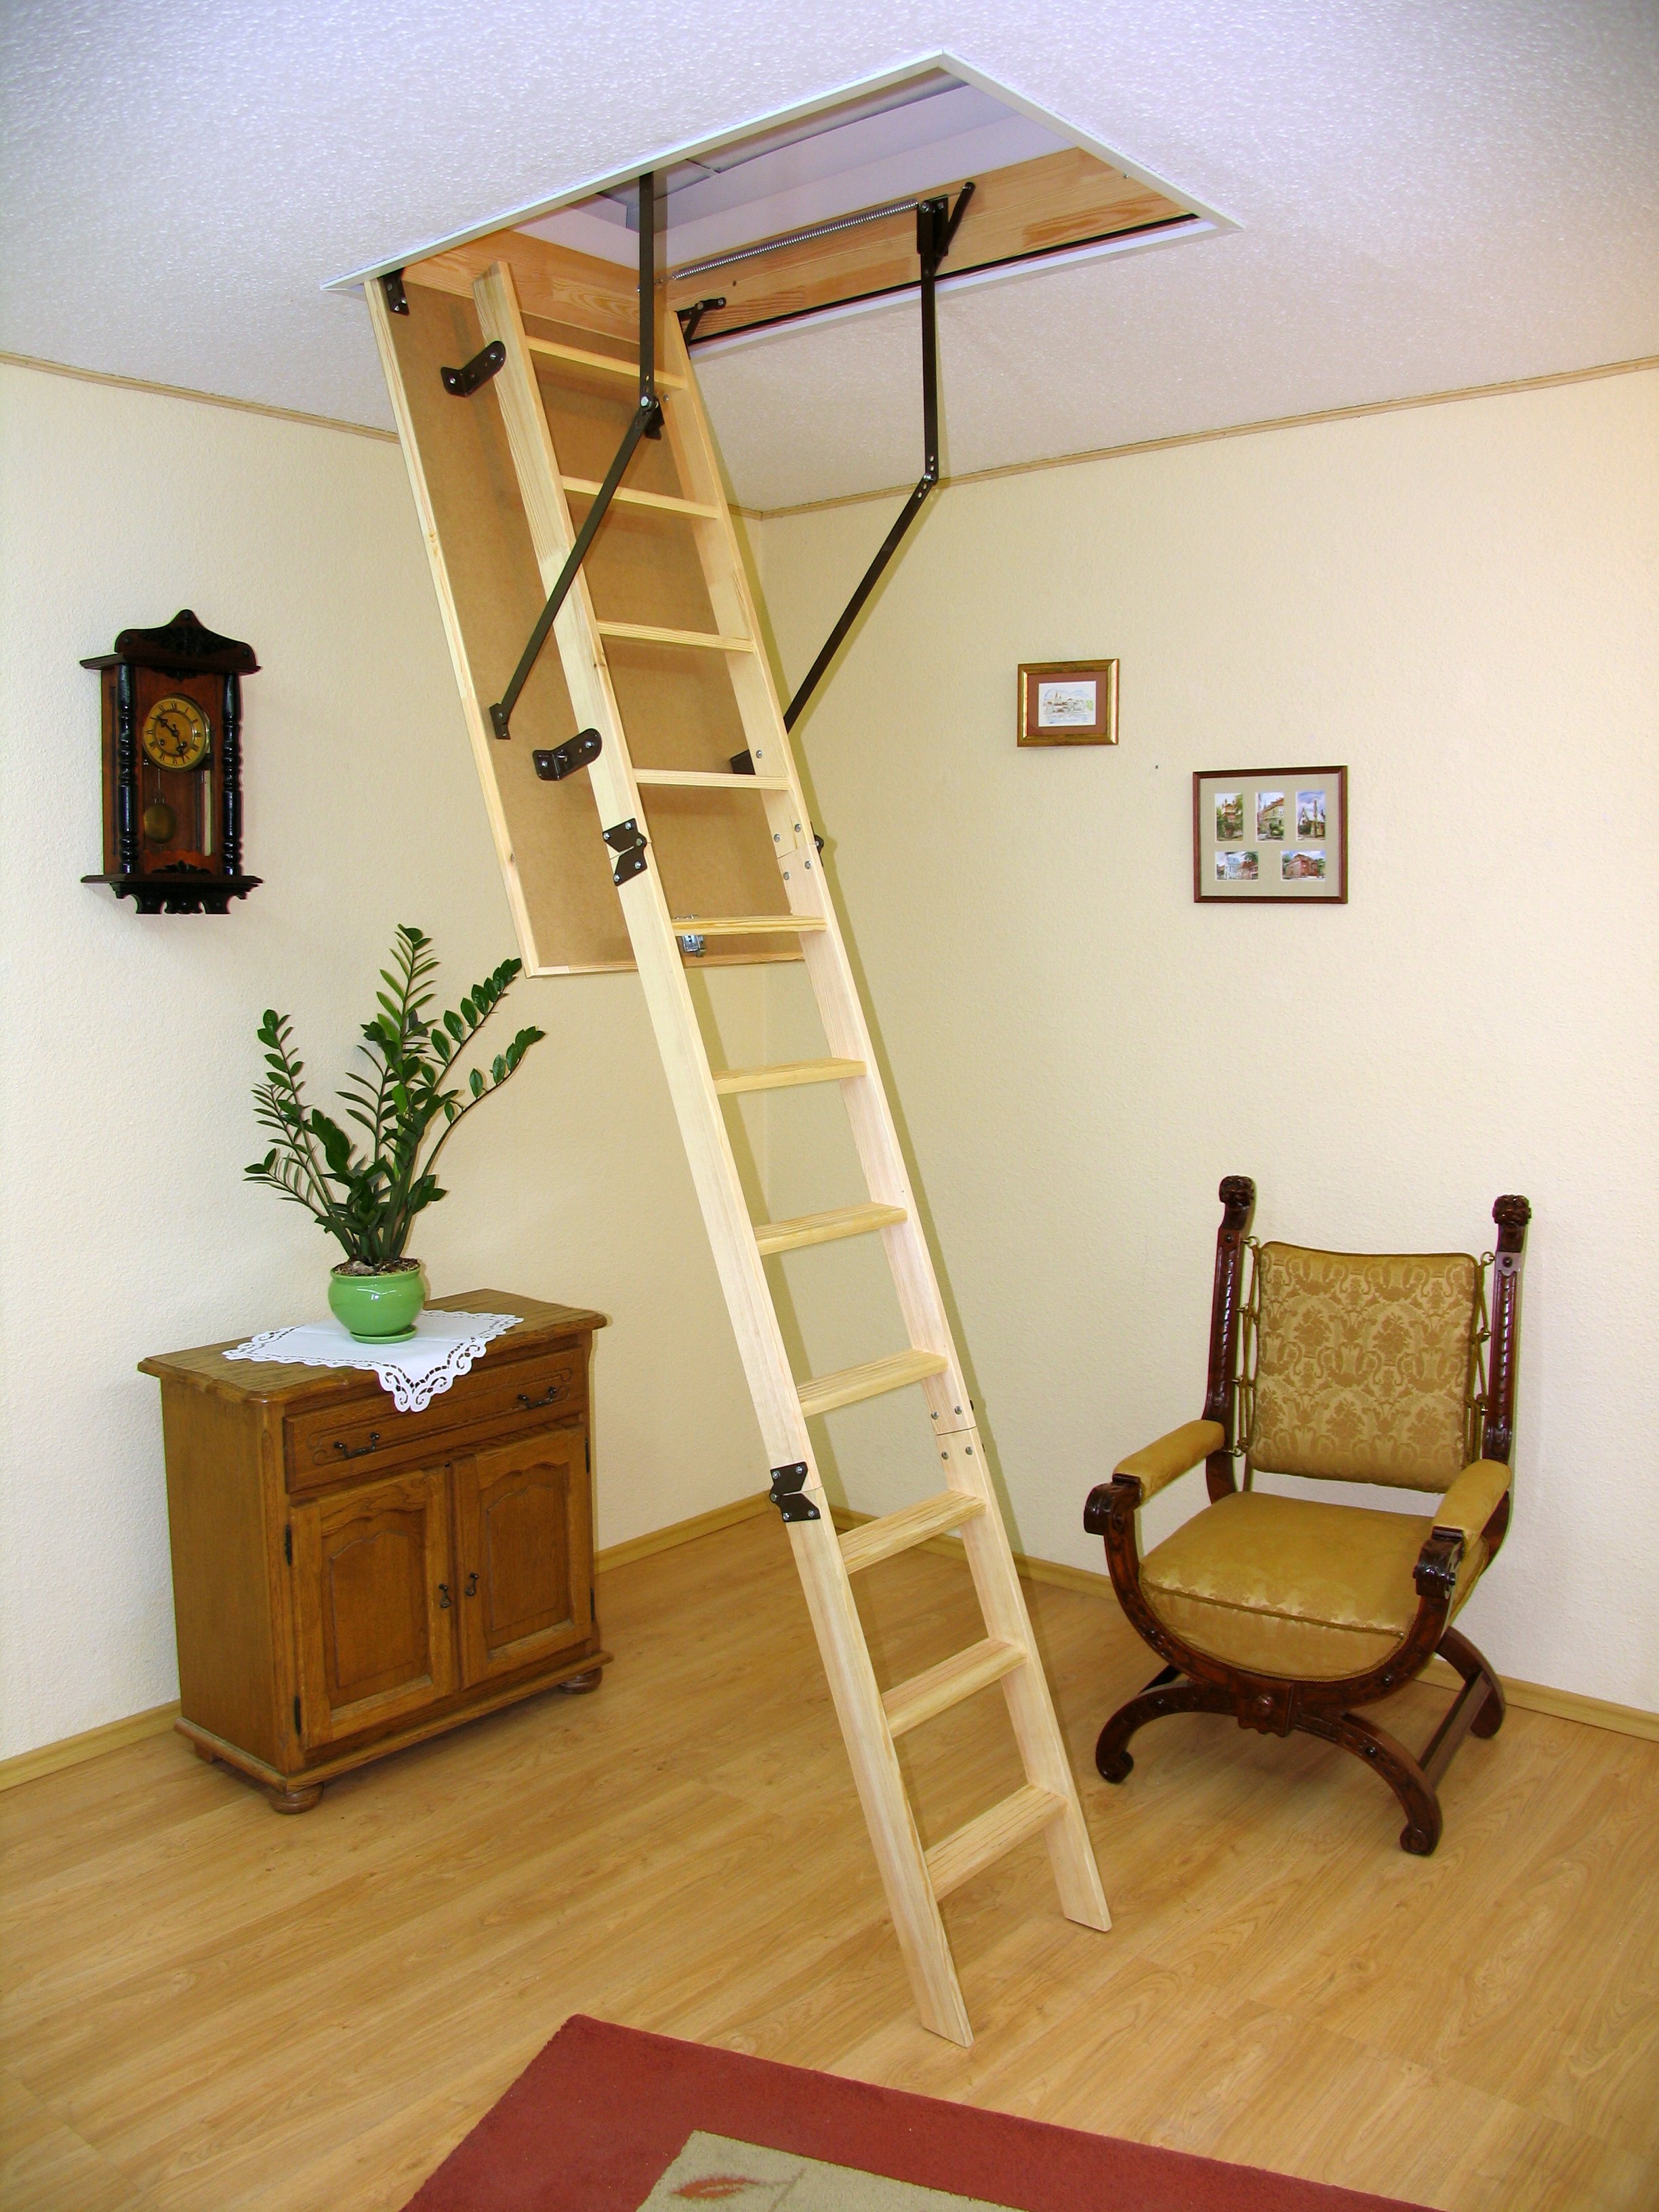 Люк на чердак цена. Чердачная лестница Oman. Чердачная лестница Oman prima. Складная чердачная лестница Standard Oman 60x120x280. Лестница чердачная эконом 120х60х280 p&h.